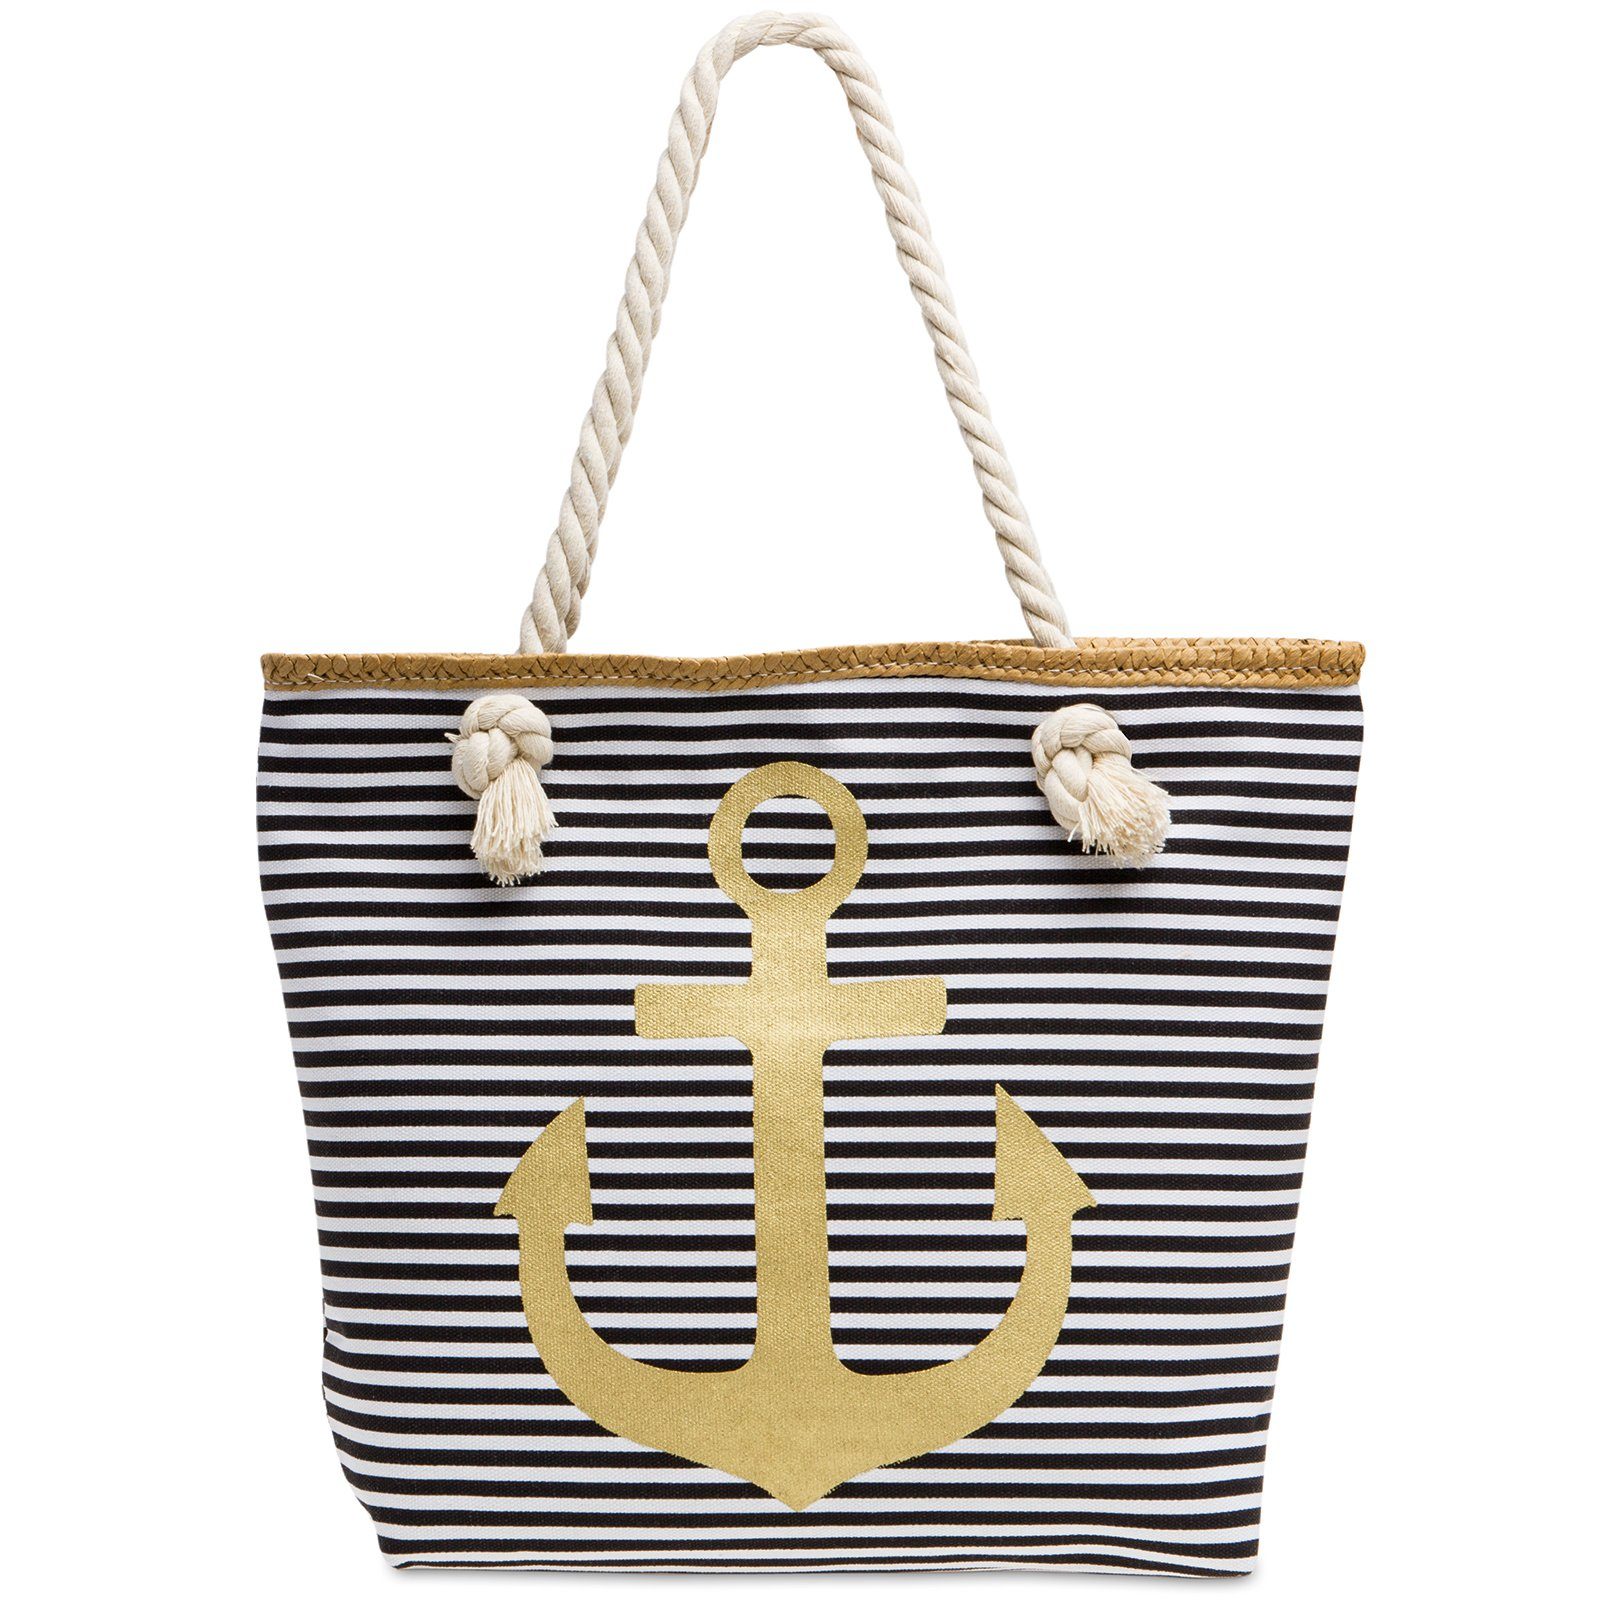 Caspar Strandtasche TS1040 Damen Strandtasche / Shopper mit Reißverschluss und maritimen Streifen ANKER Muster schwarz - gold | Canvas-Taschen